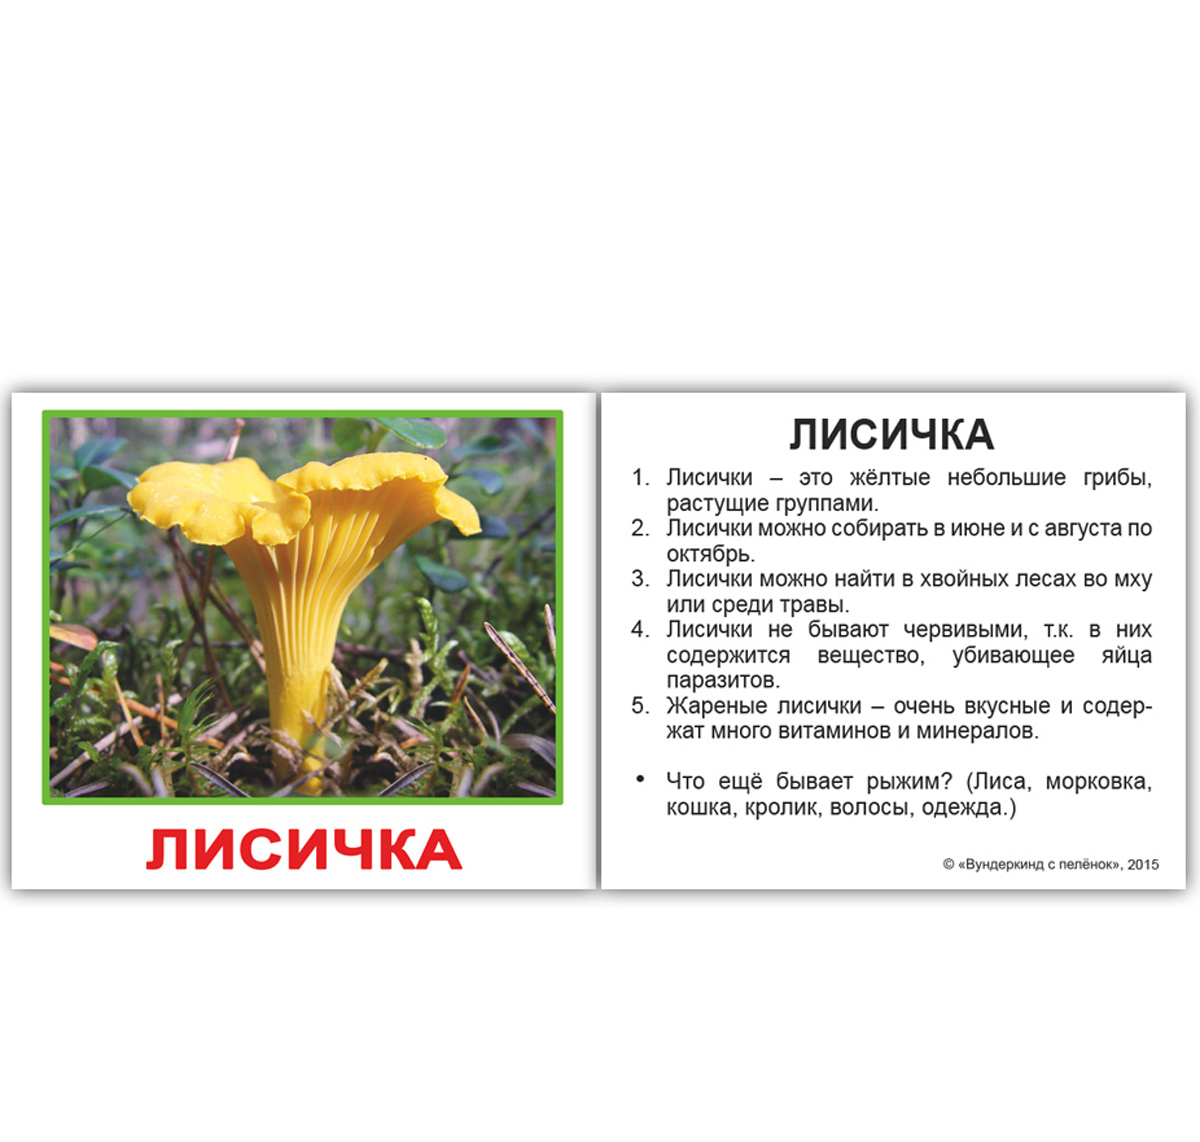 Картки Домана міні російські з фактами 'Гриби'